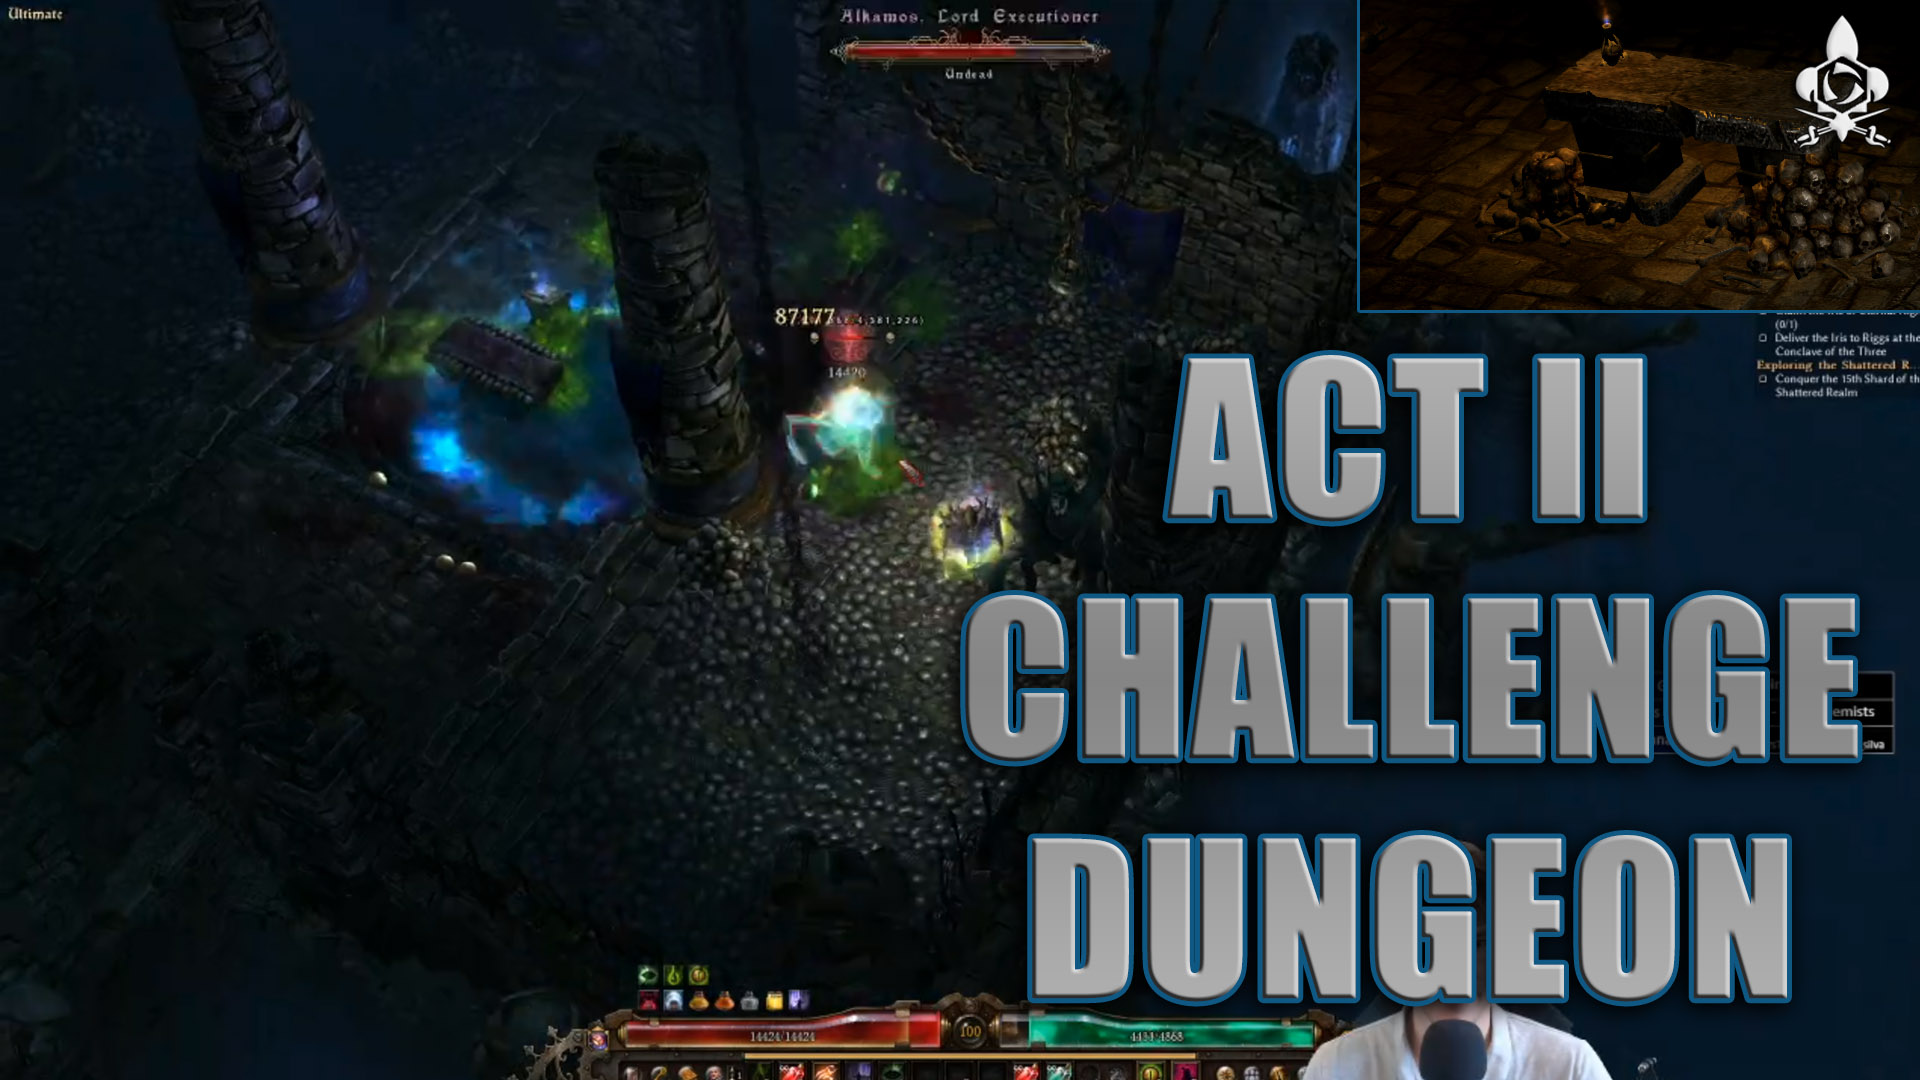 act II dungeon challenge